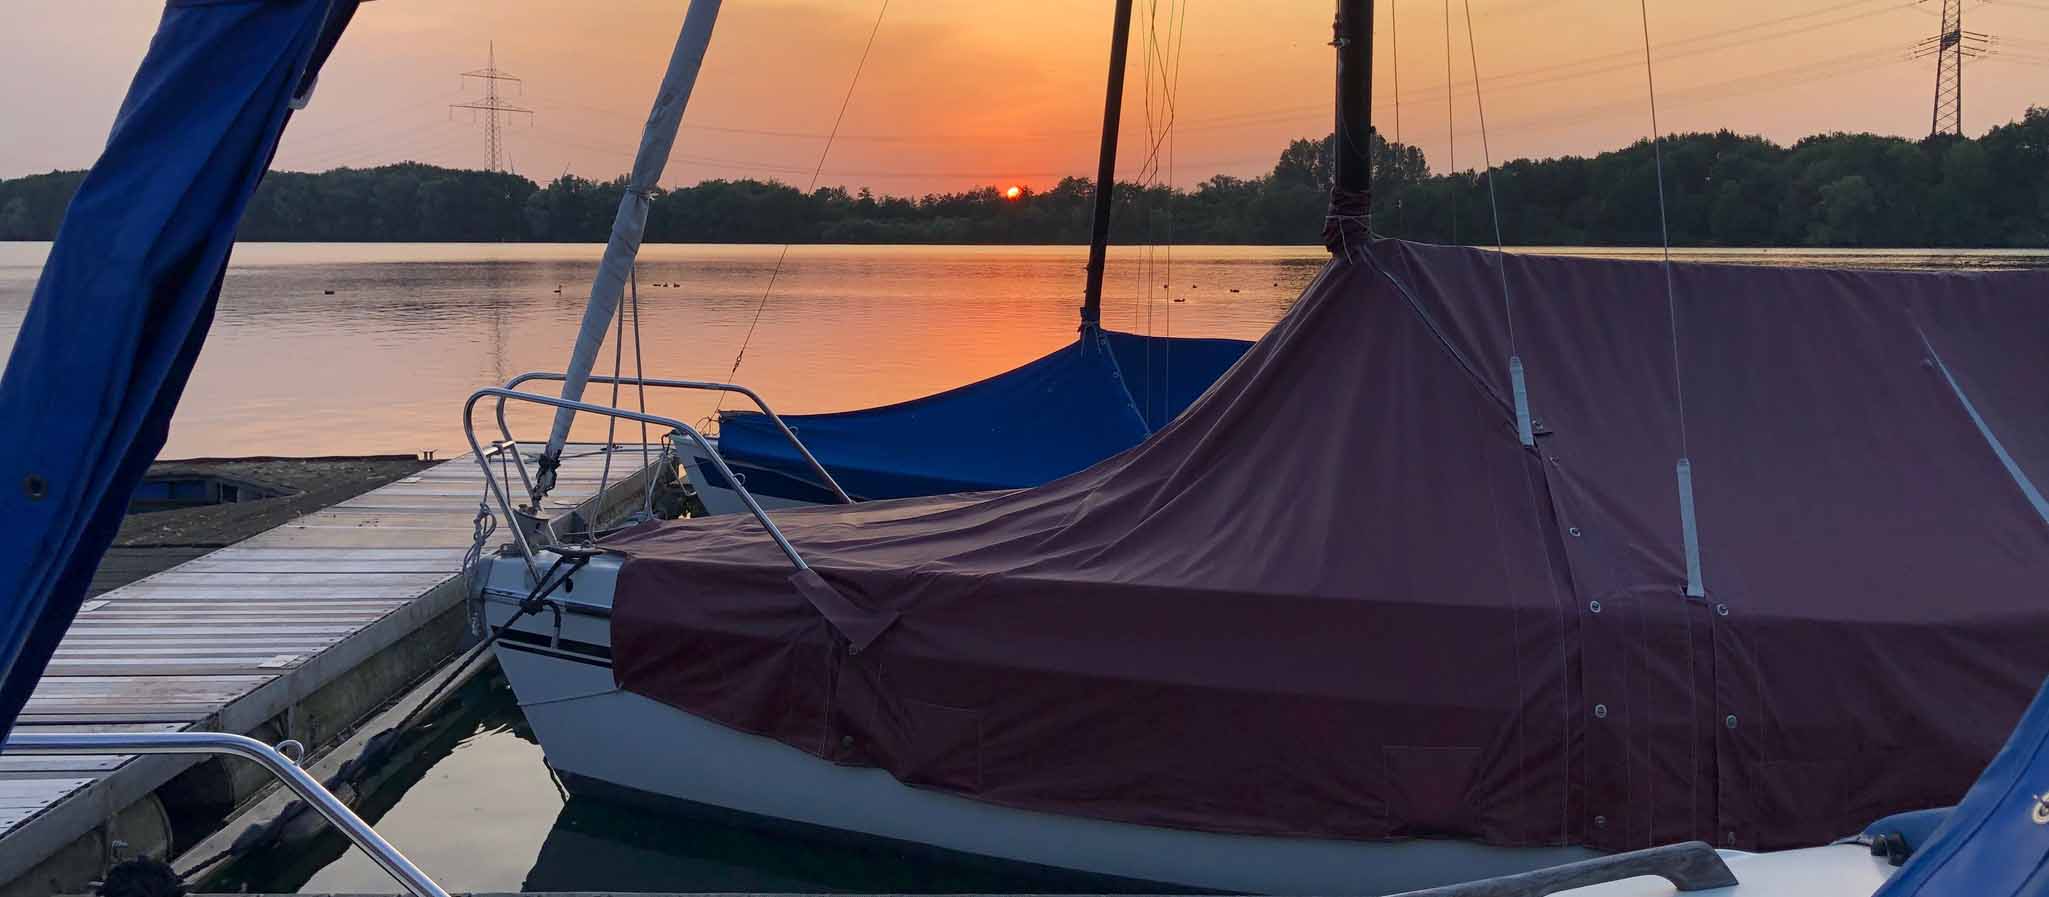 Sonnenuntergang auf Stegen vor Booten